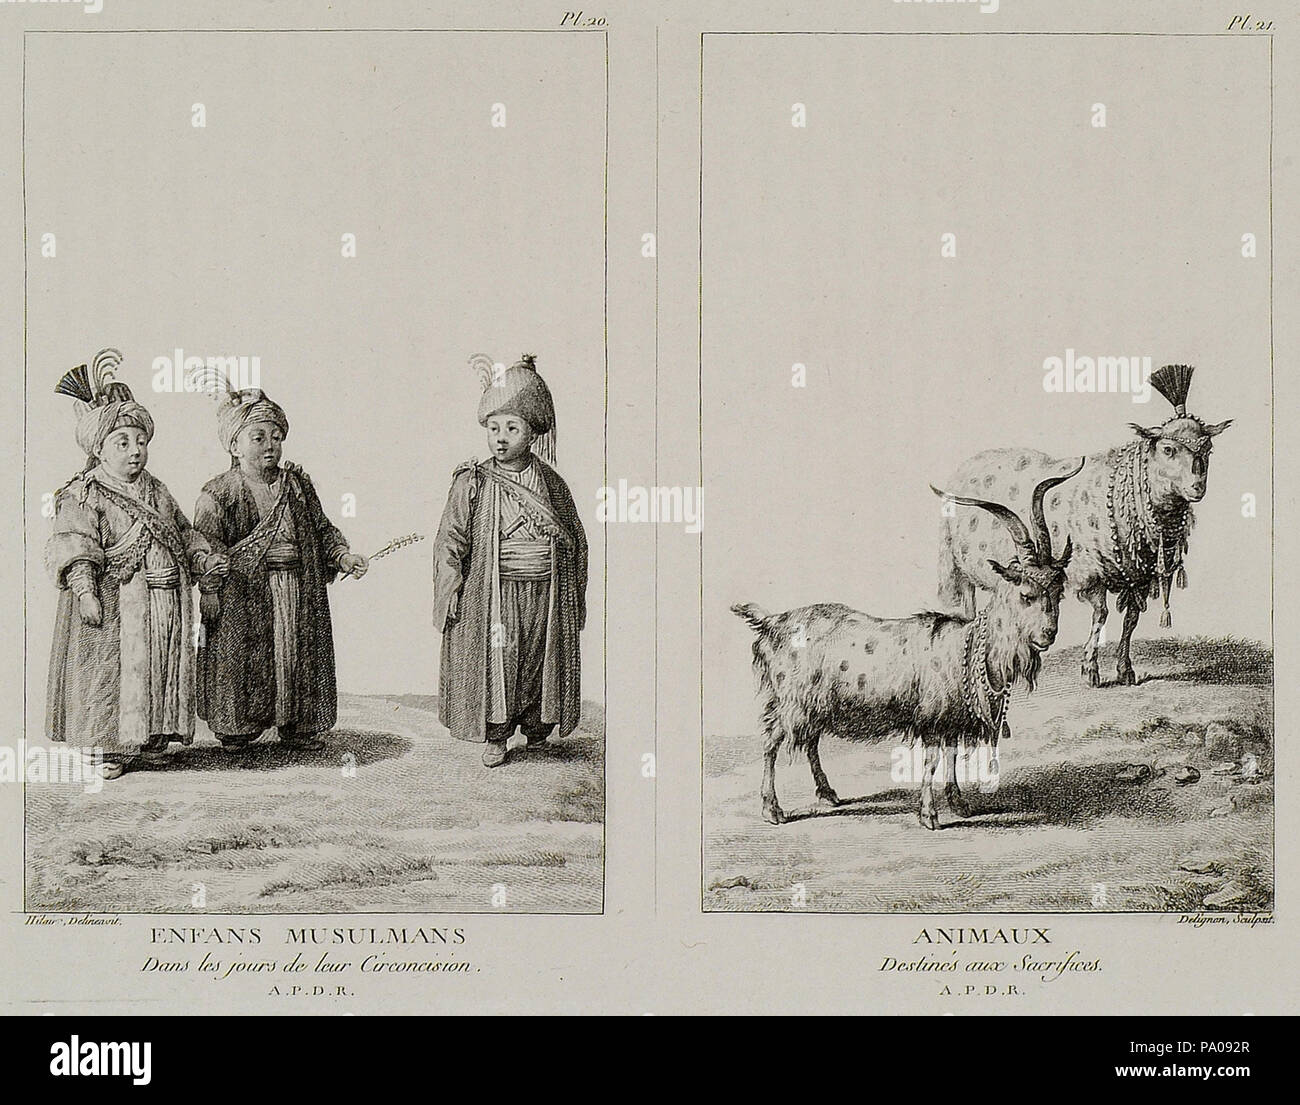 620 Enfans Musulmans dans les Jours de Leur circoncision Animaux destinés aux Opfer - Mouradgea D'ohsson - 1787 Stockfoto